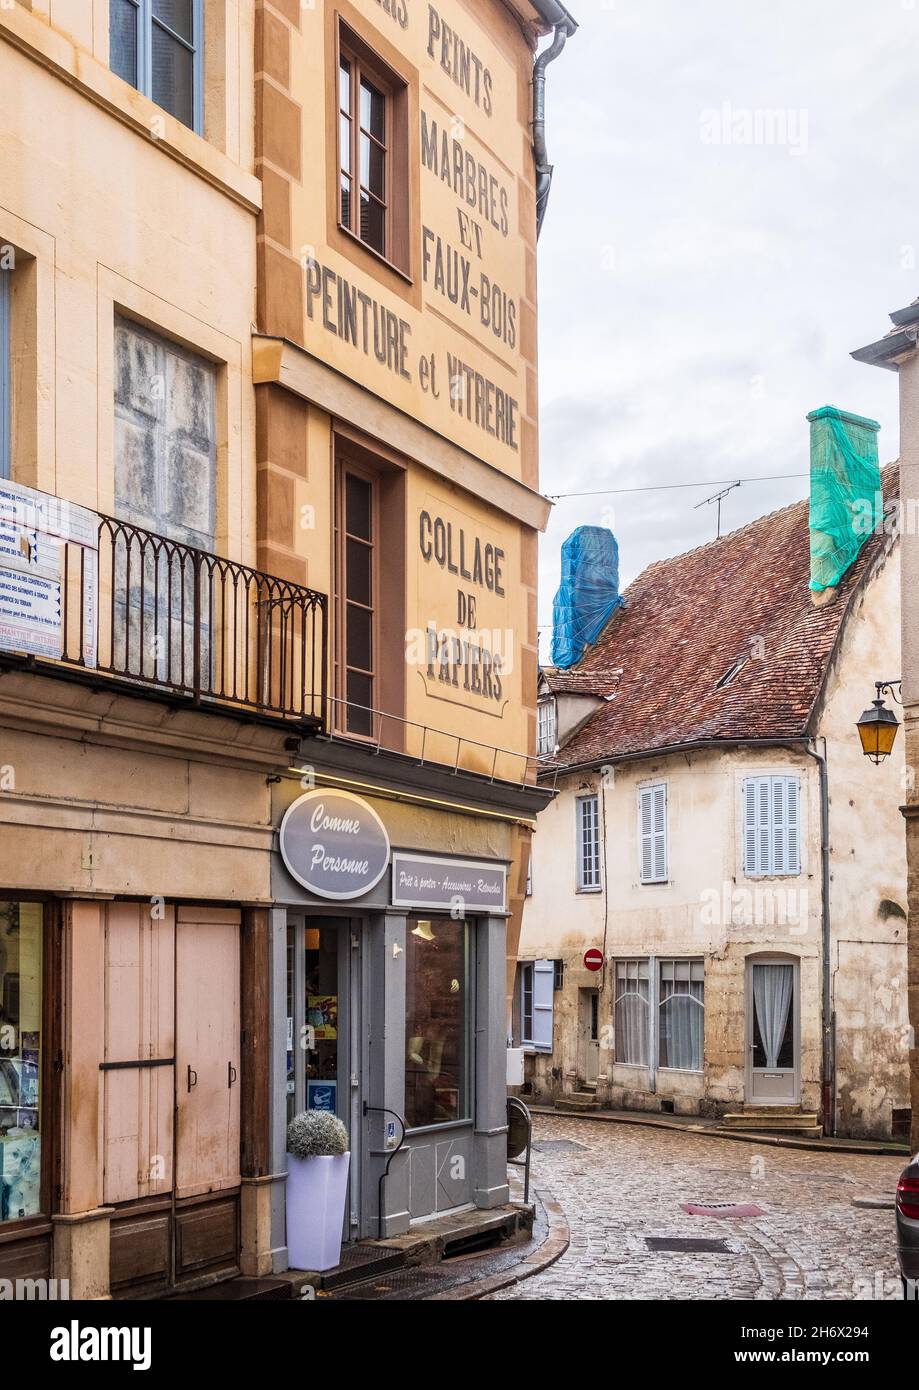 Justo a la salida de Rue Buffon en Semur-en-Auxois es Rue du Vieux Marché, con letras atractivas por encima de una tienda que ahora es una tienda de ropa. Foto de stock